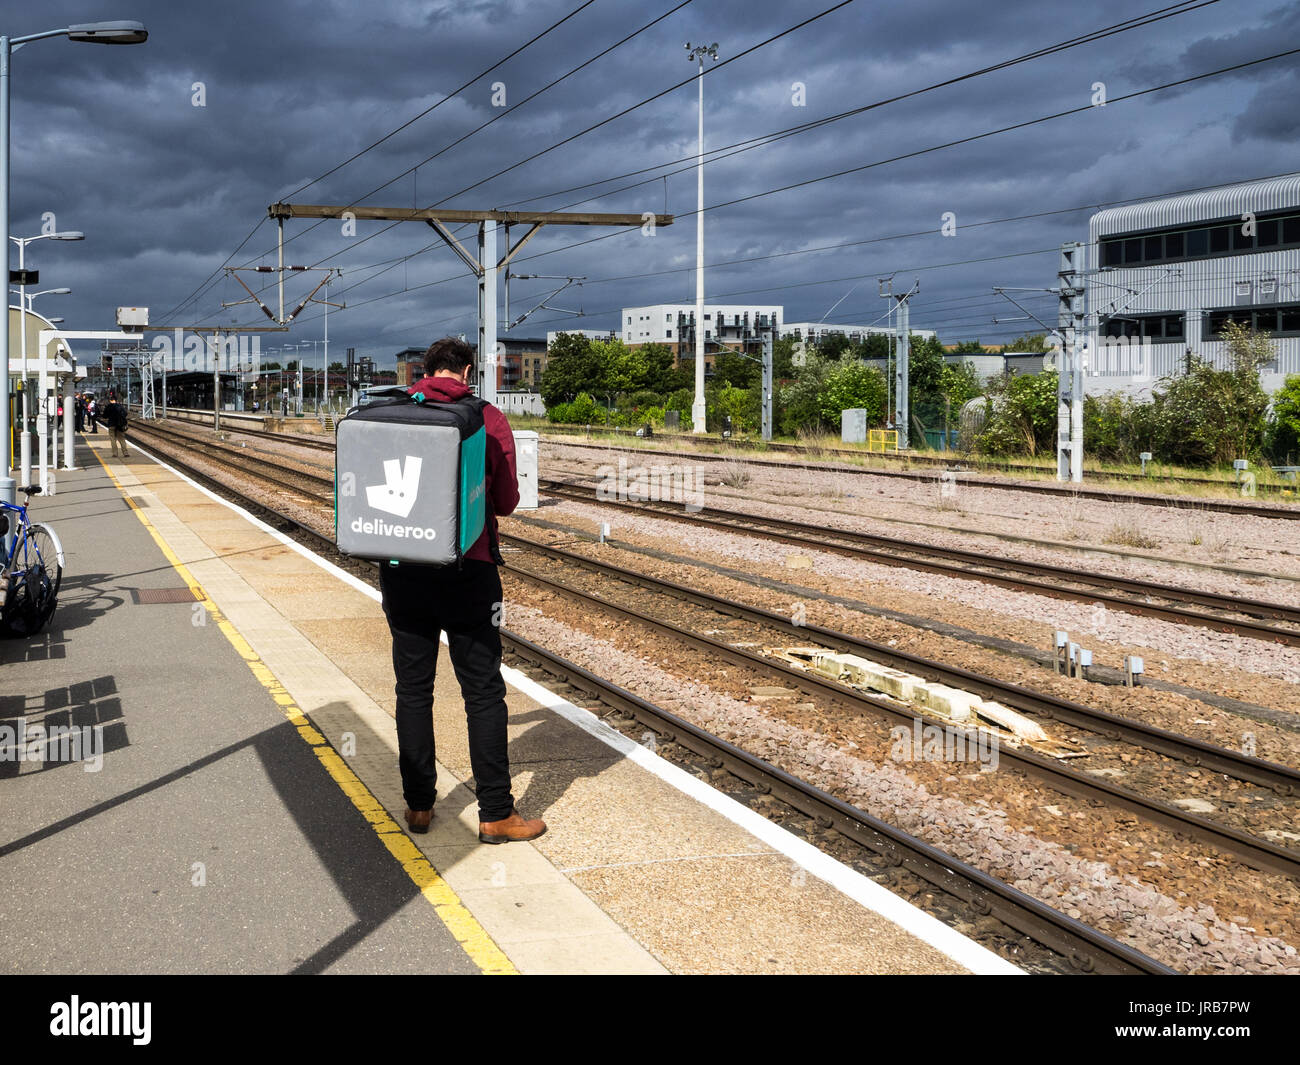 Mit dem Zug - eine Deliveroo Deliveroo fast food Kurier Fahrer wartet ein bummelzug in Cambridge, Großbritannien Stockfoto